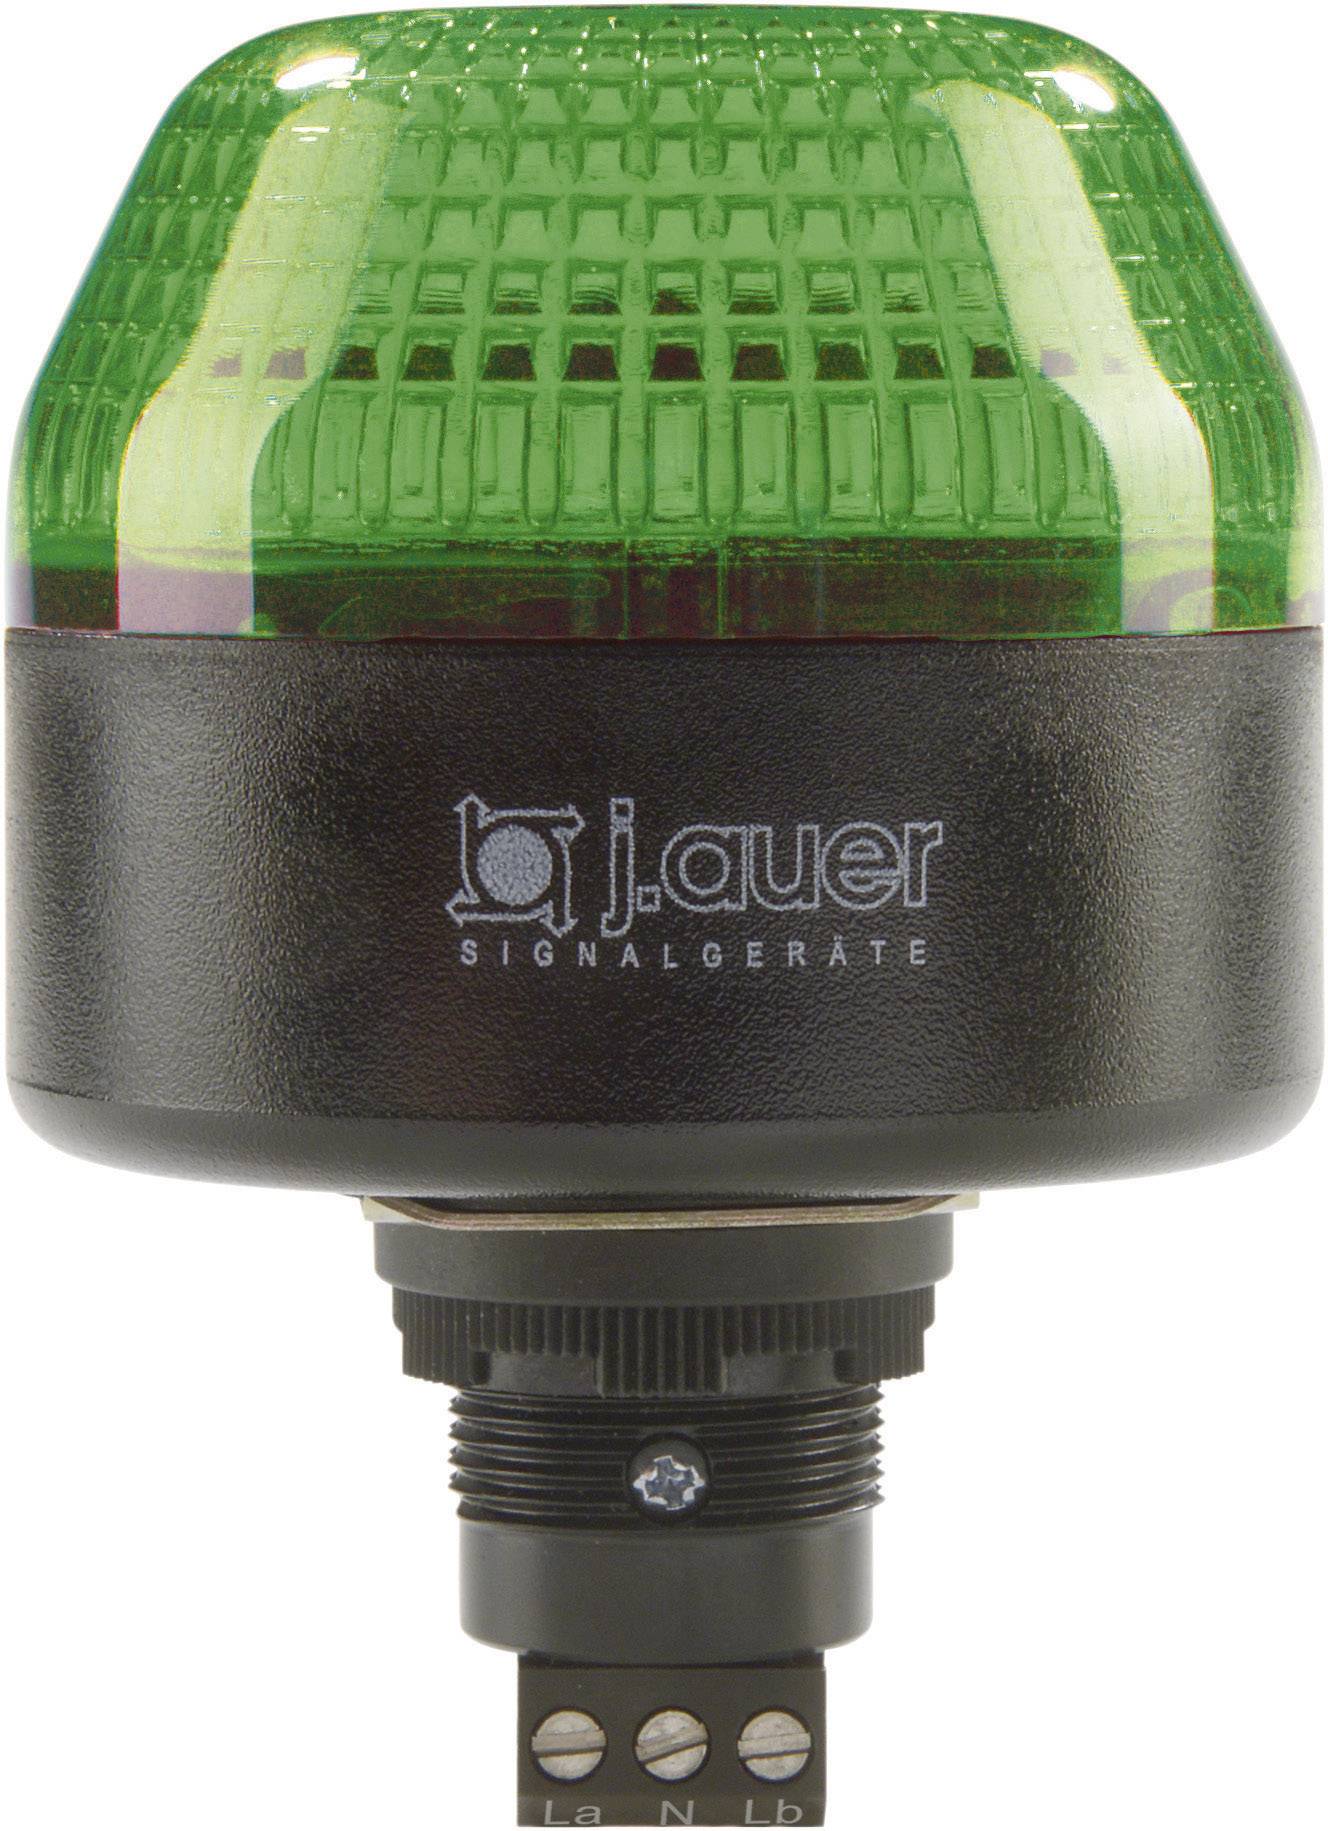 AUER SIGNAL Signalleuchte LED Auer Signalgeräte IBL Grün Dauerlicht, Blinklicht 24 V/DC, 24 V/AC